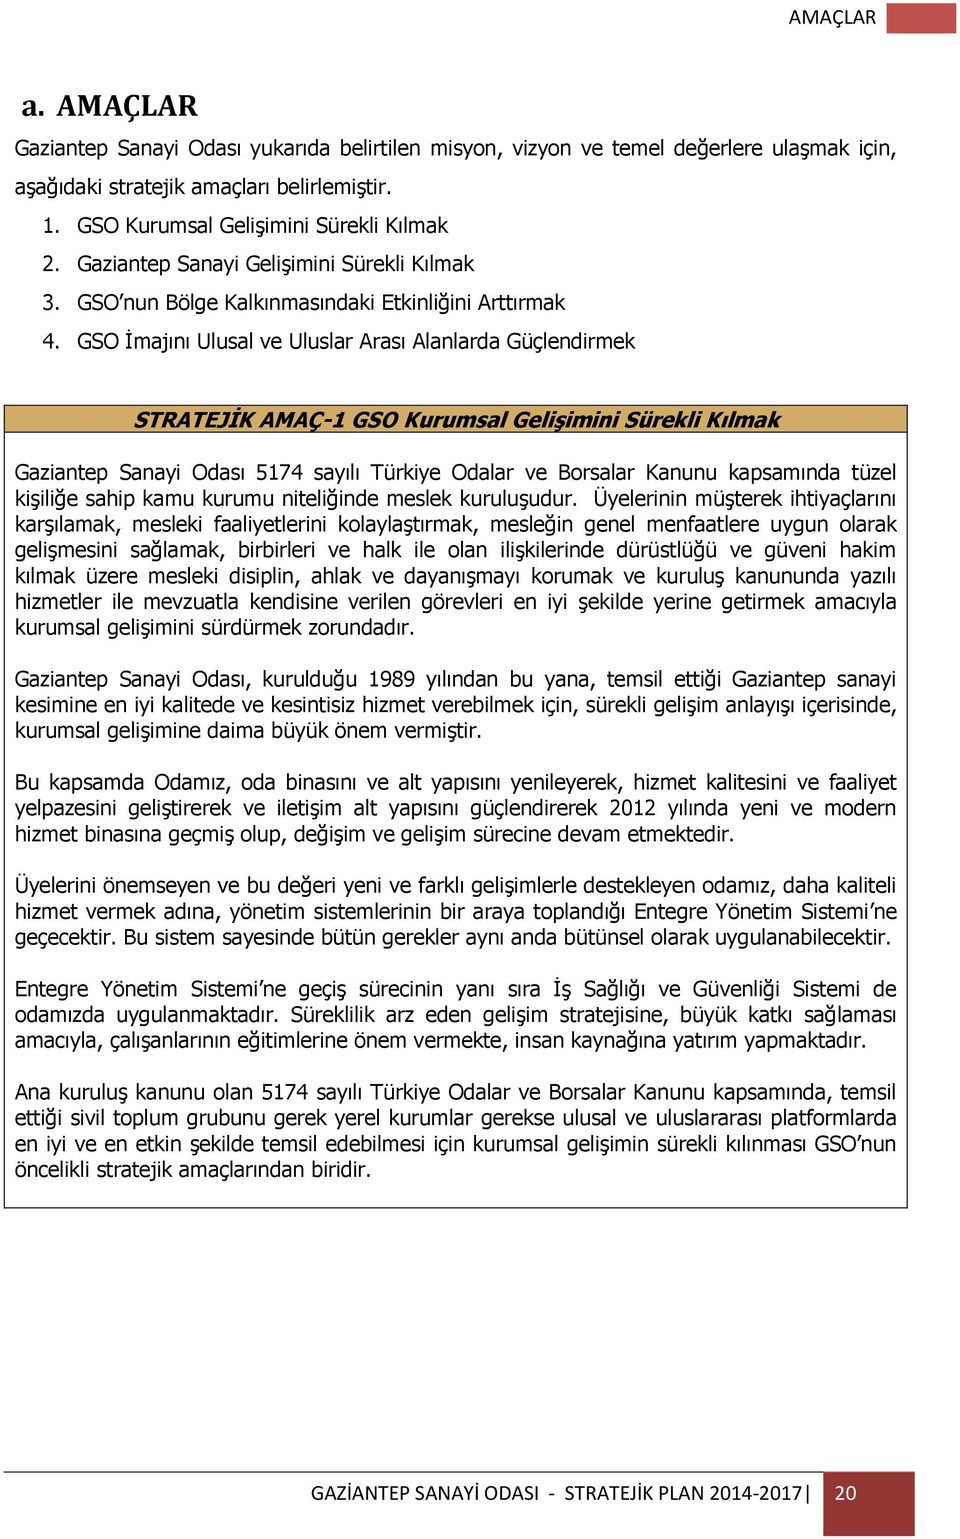 GSO İmajını Ulusal ve Uluslar Arası Alanlarda Güçlendirmek STRATEJİK AMAÇ-1 GSO Kurumsal Gelişimini Sürekli Kılmak Gaziantep Sanayi Odası 5174 sayılı Türkiye Odalar ve Borsalar Kanunu kapsamında